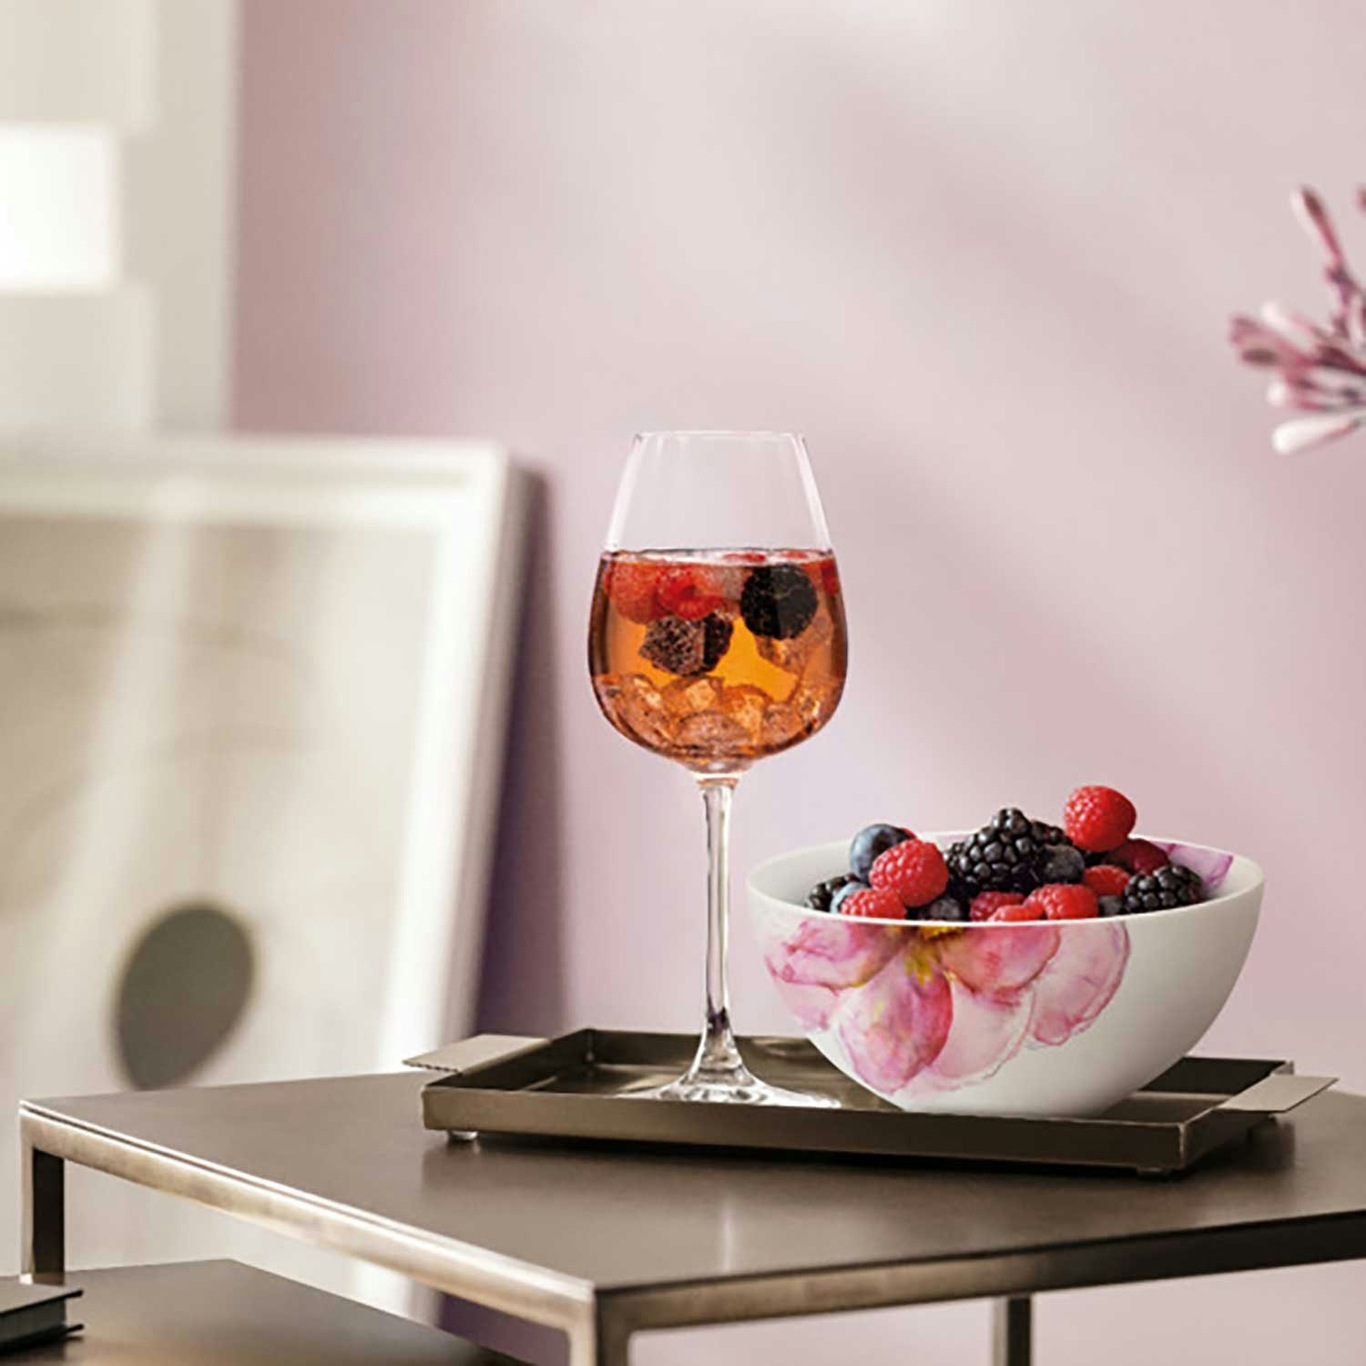 https://royaldesign.com/image/11/villeroy-boch-rose-garden-red-wine-goblet-set-4-pcs-1?w=800&quality=80